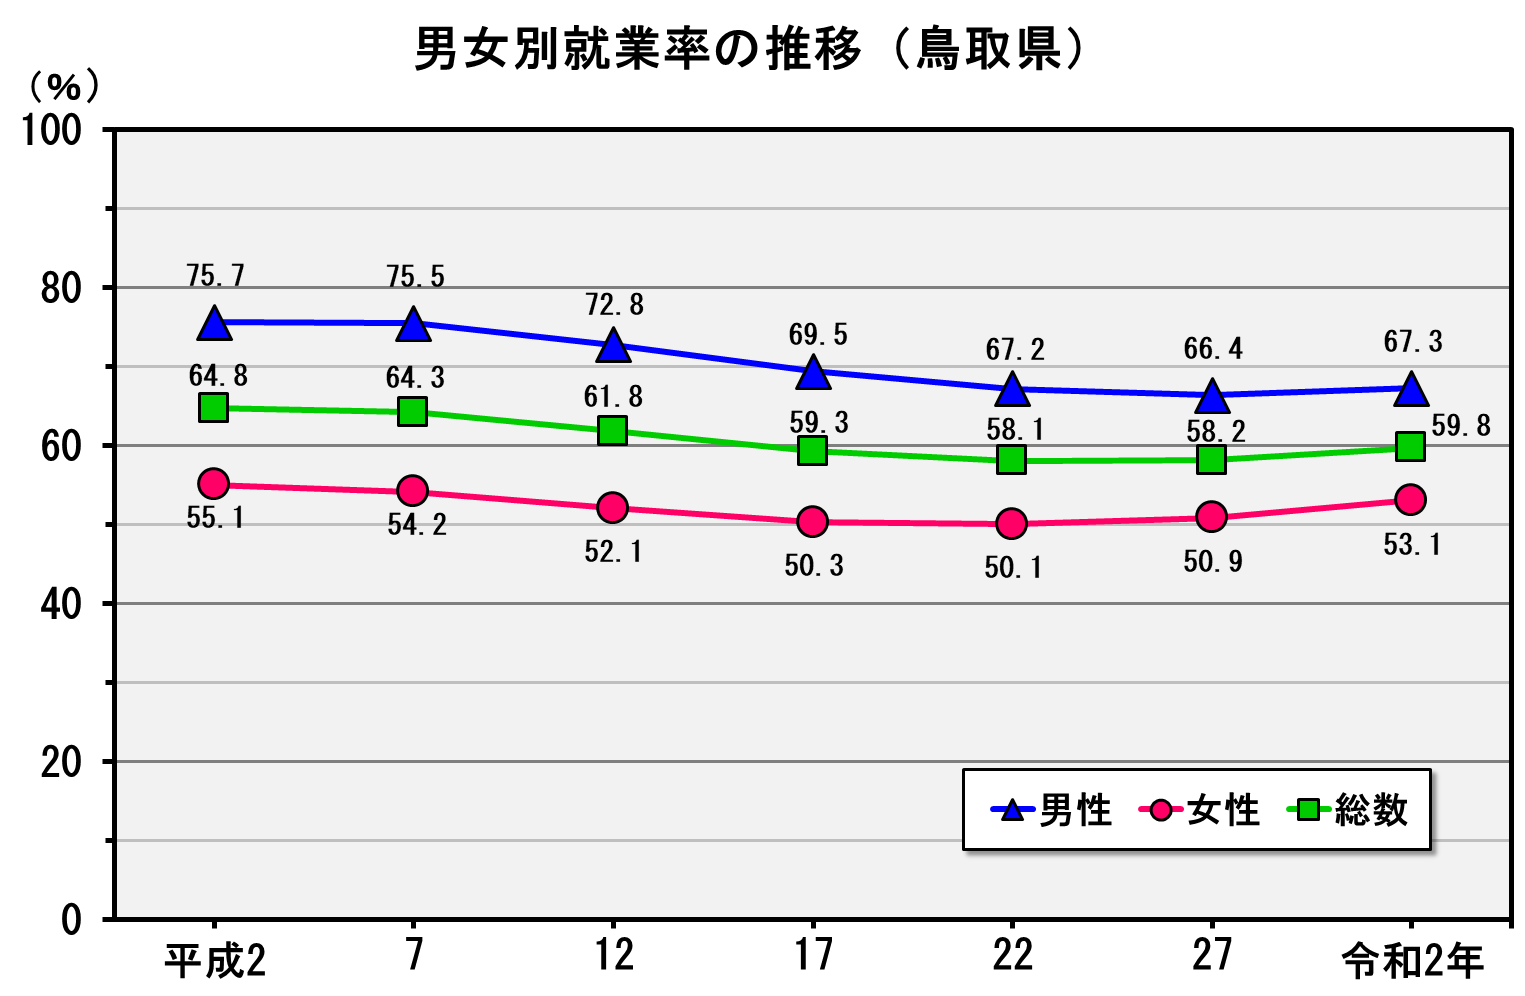 男女別就業率の推移（鳥取県）のグラフ